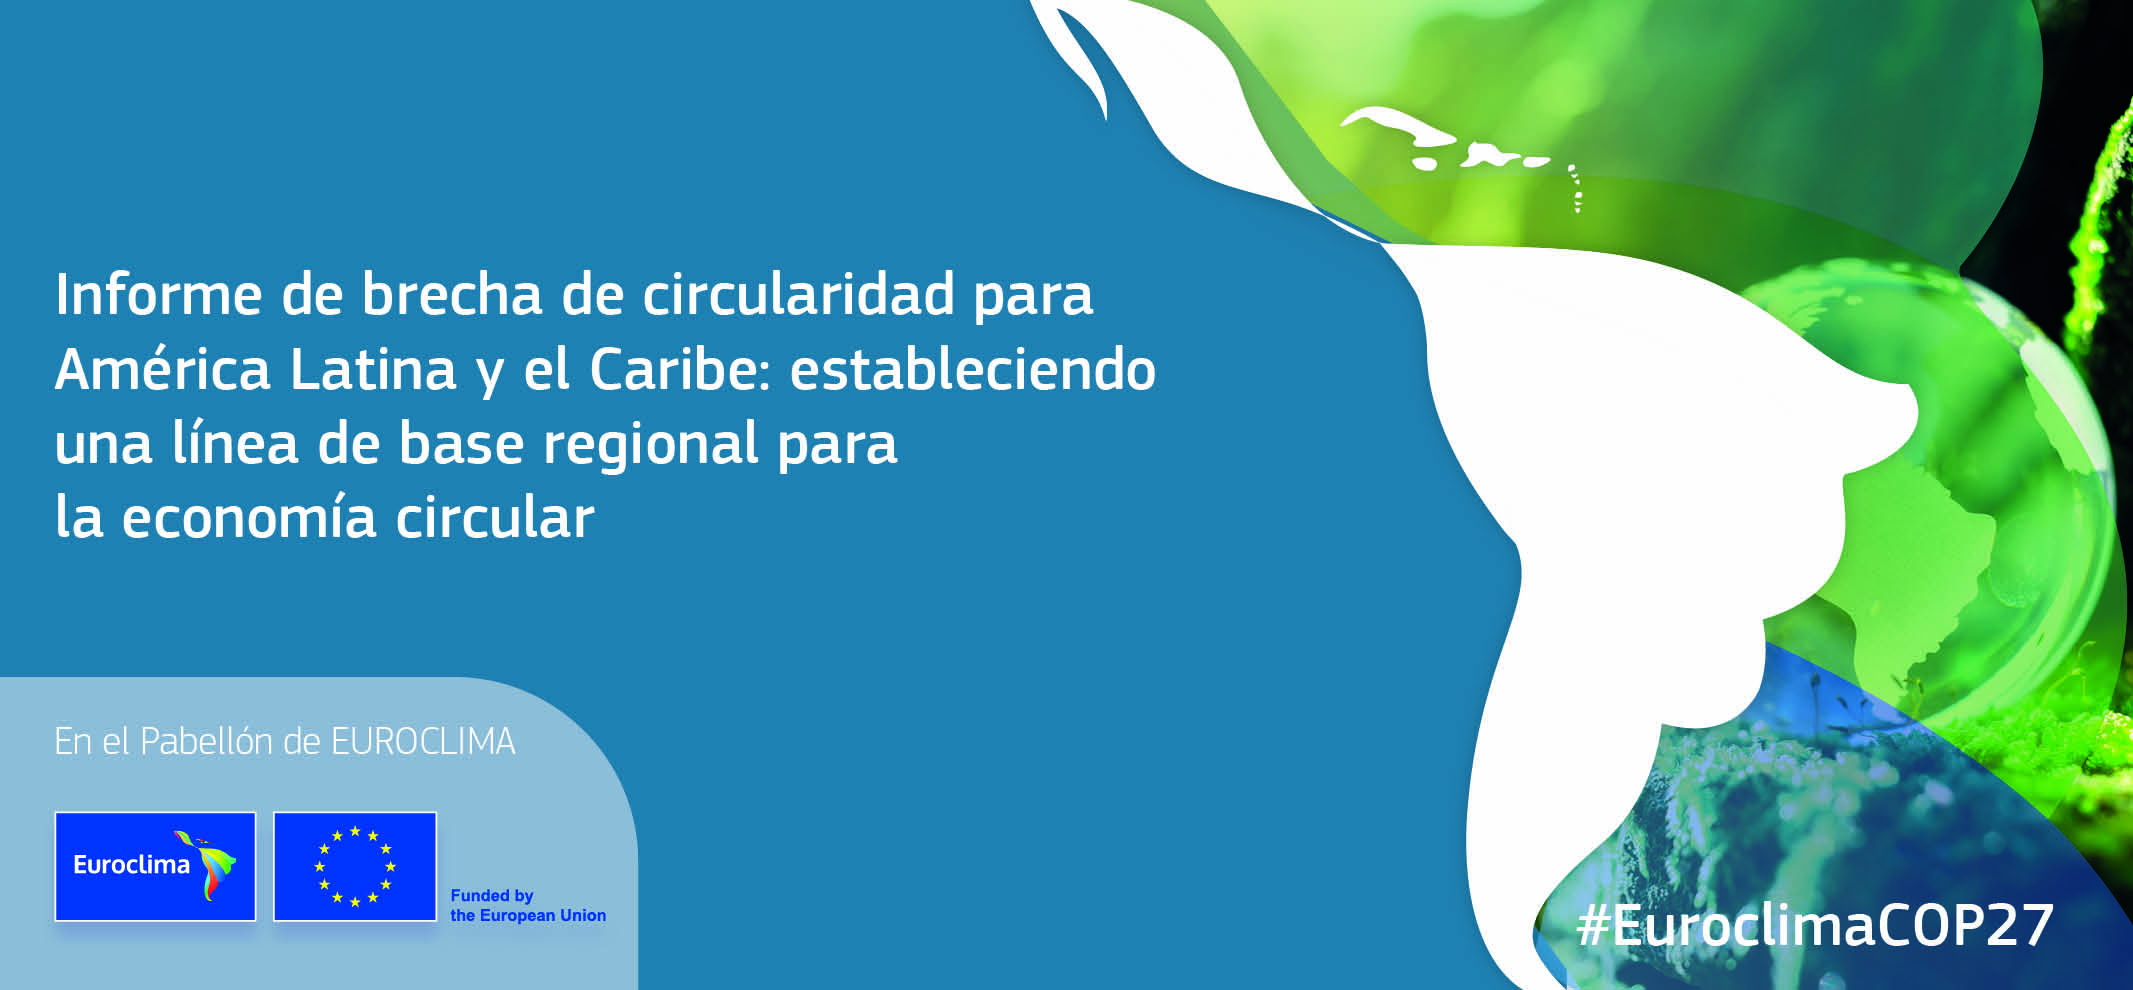 Informe de brecha de circularidad para America Latina y el Caribe estableciendo una linea de base regional para la economia circular 